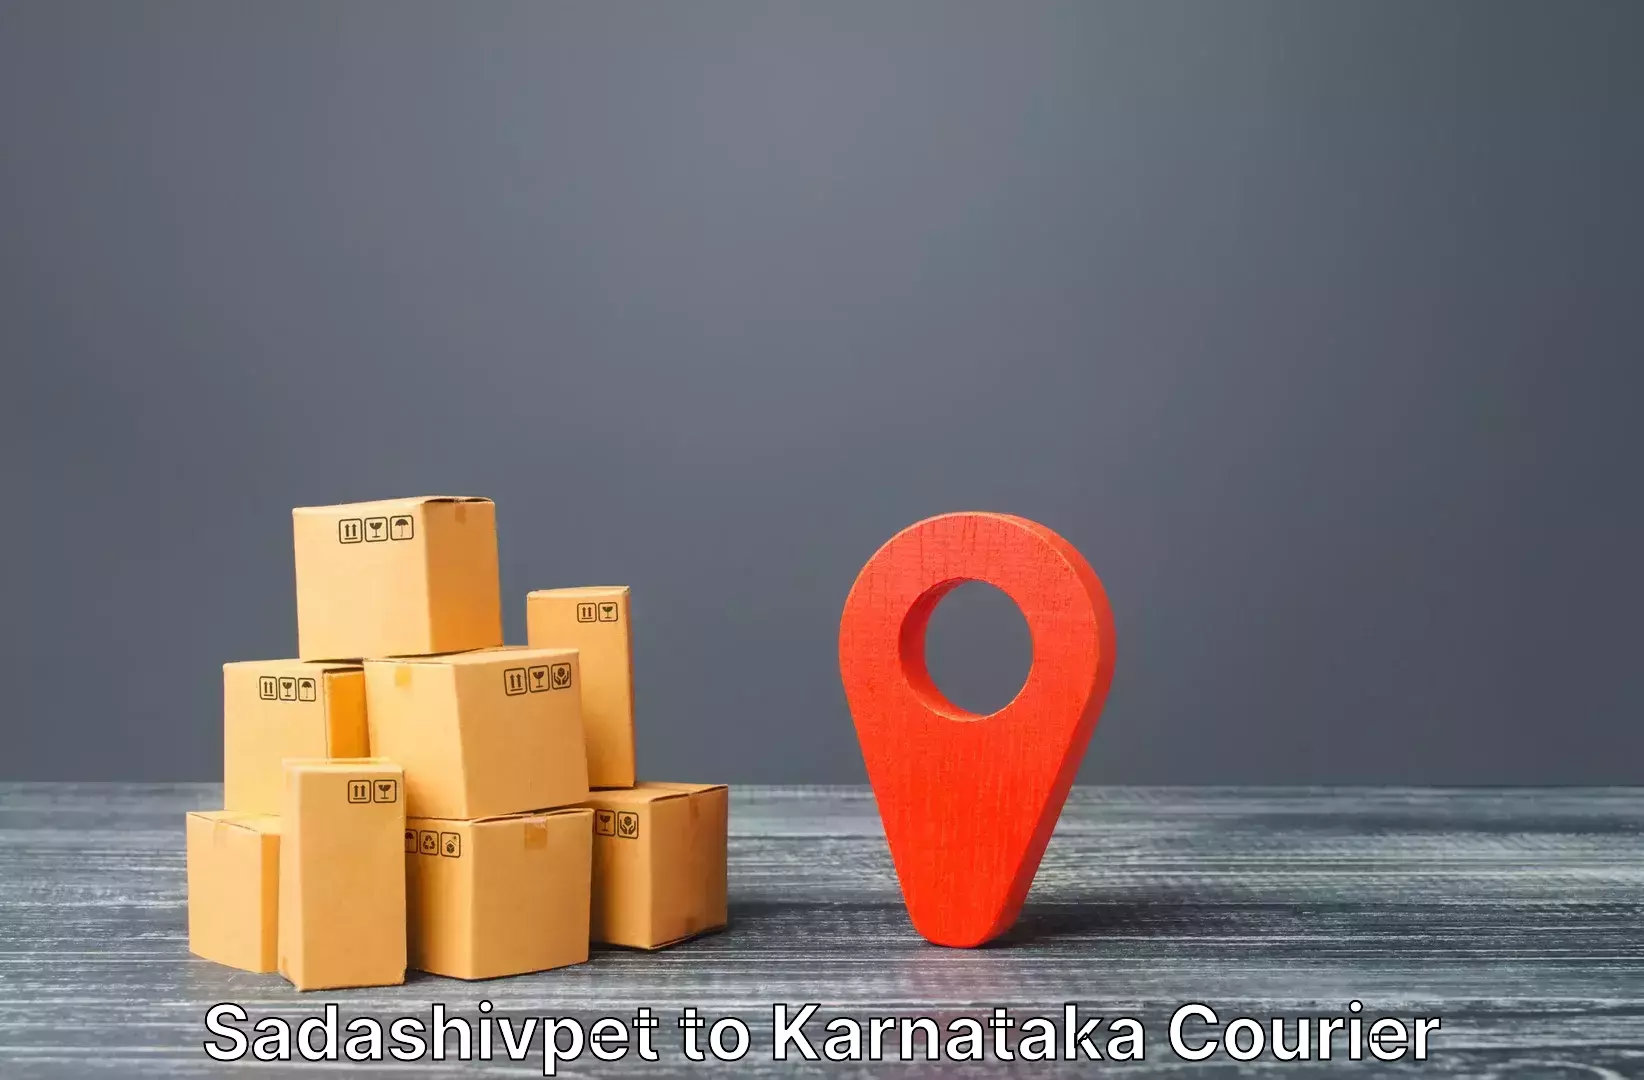 Luggage shipping estimate in Sadashivpet to Sandur